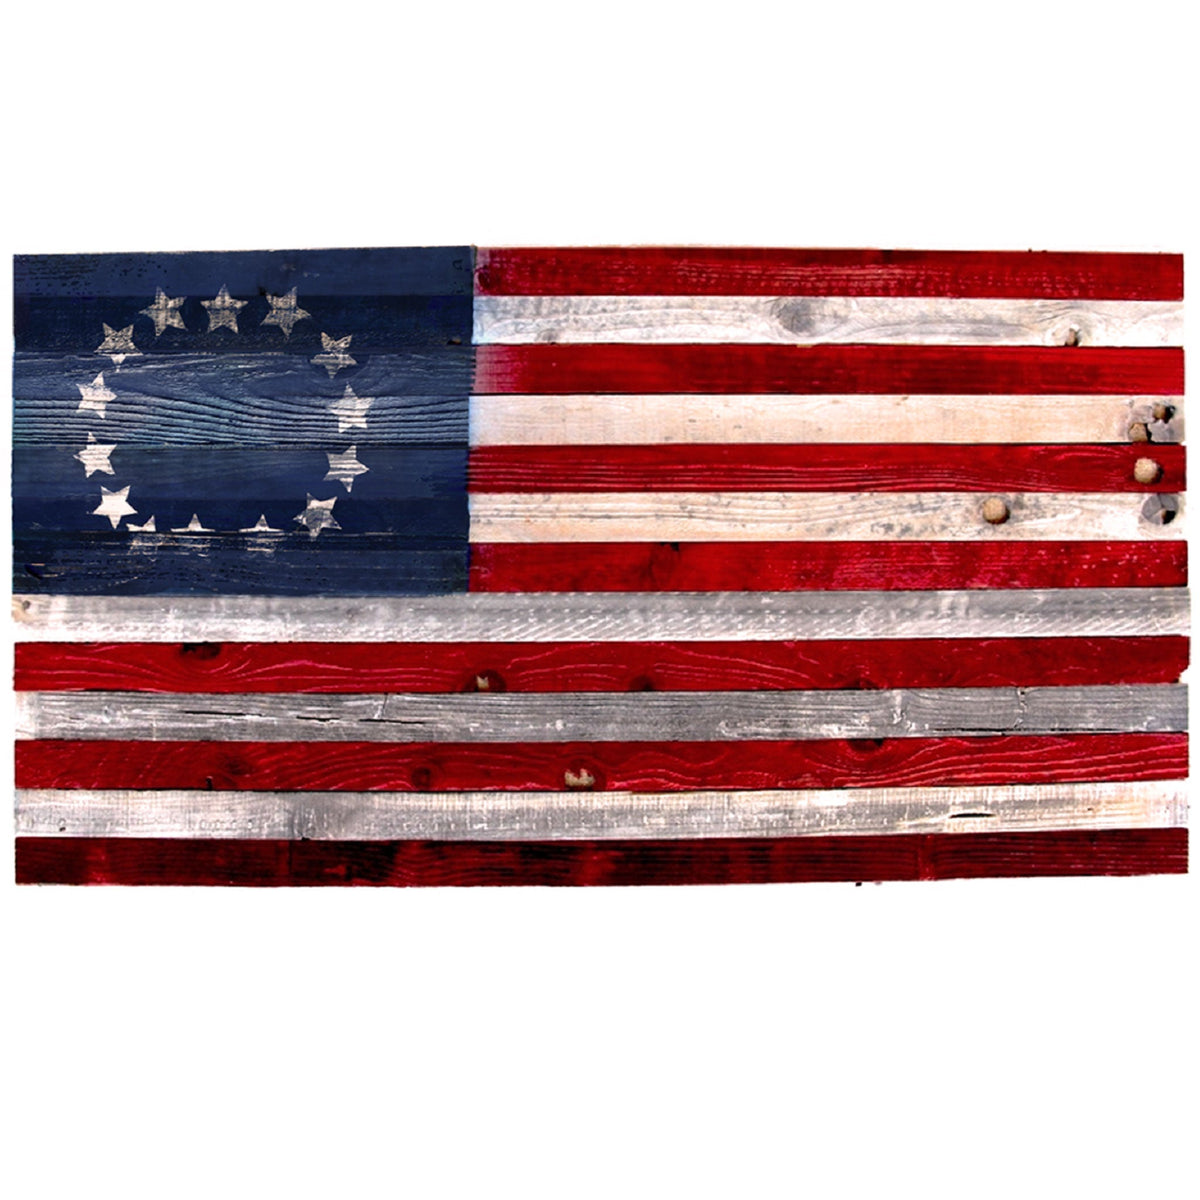 13 Colonies American Flags